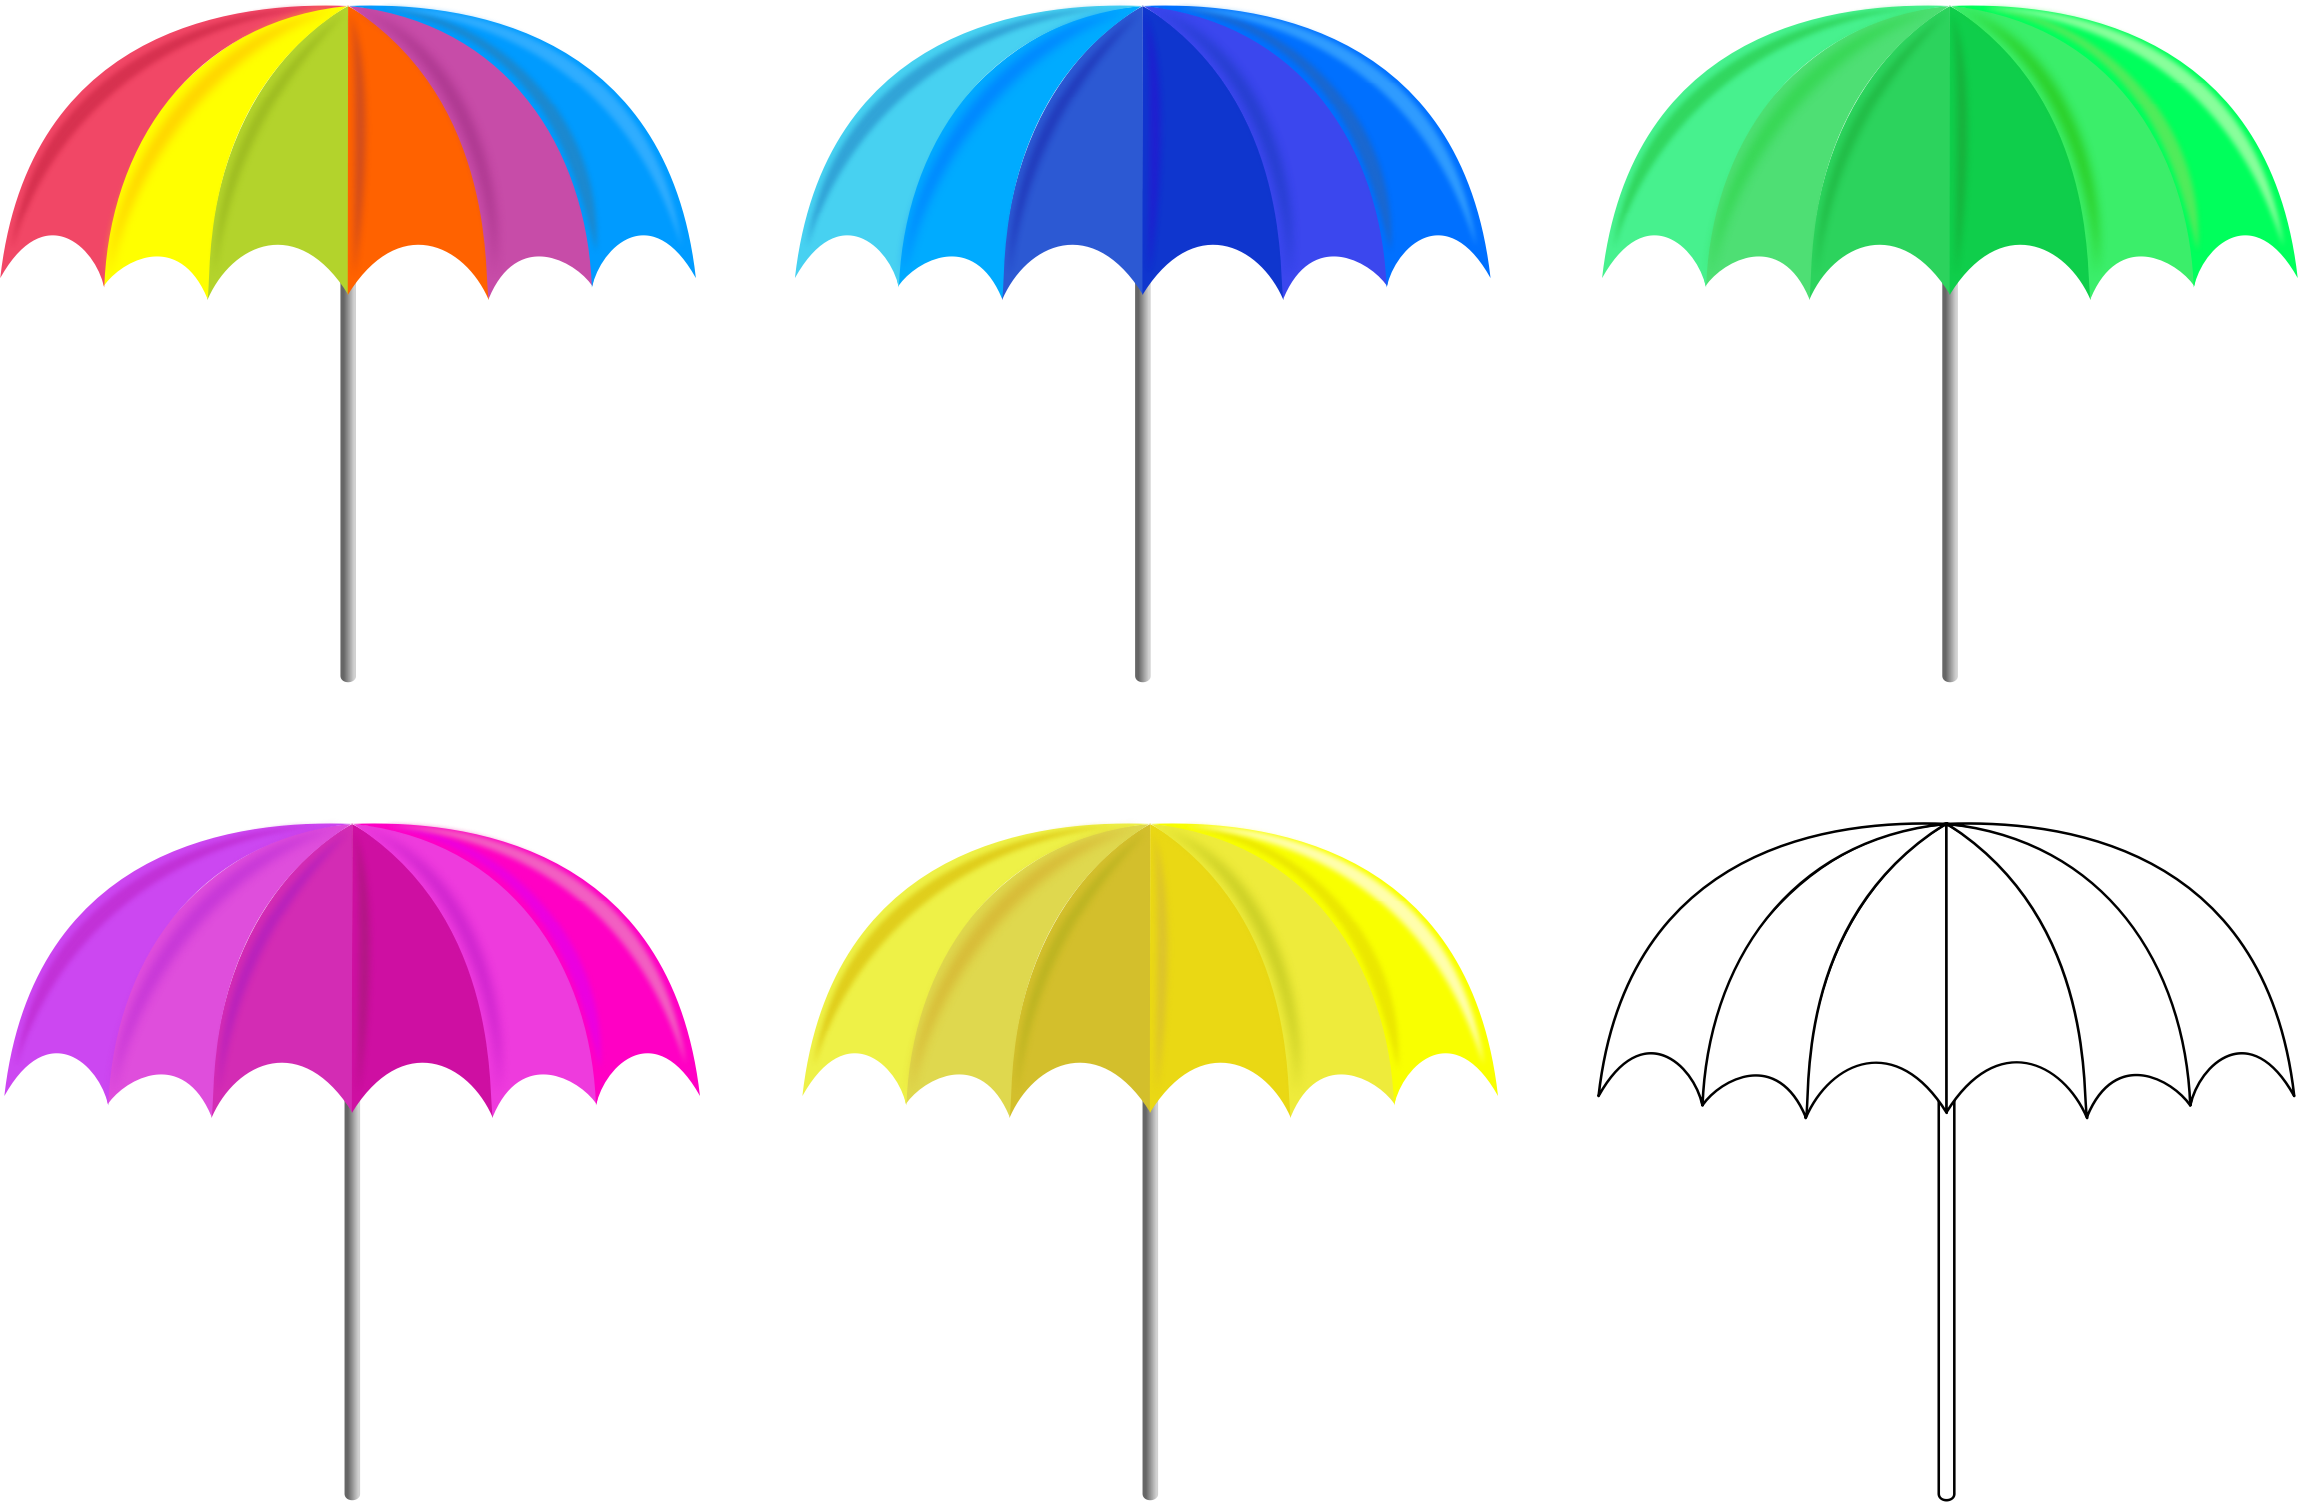 Big Image - Multi Colored Umbrellas (2298x1502)